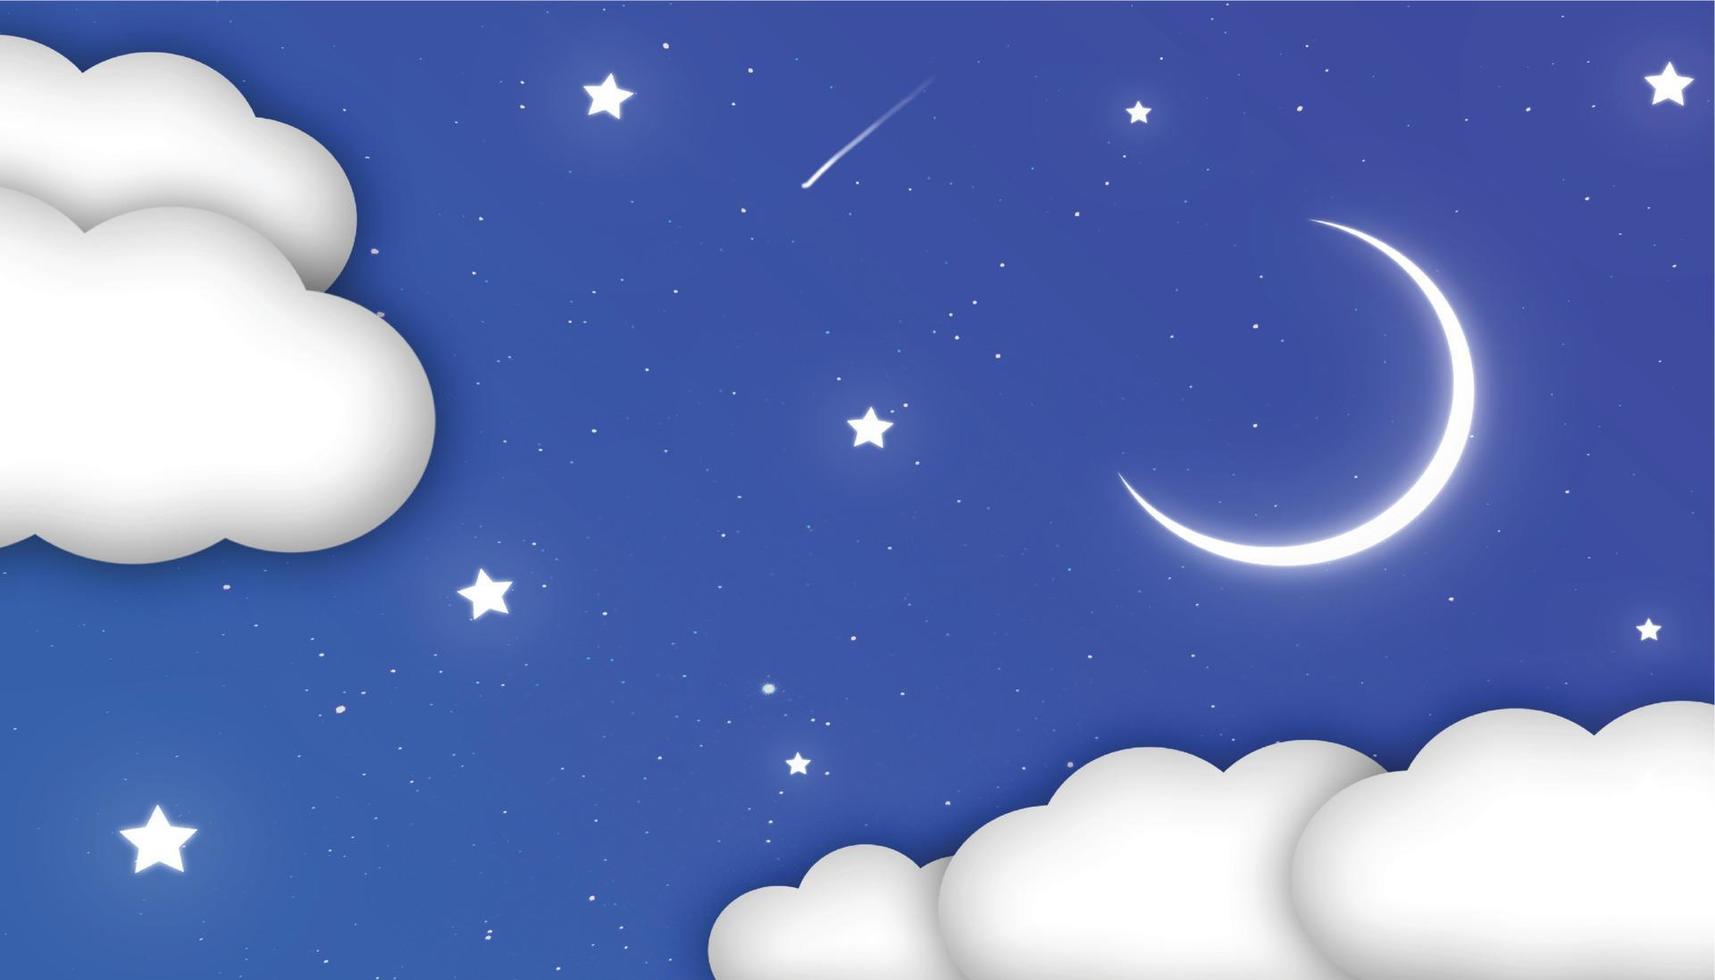 ciel bleu avec des nuages et des étoiles brillantes et illustration vectorielle de lune, illustration simple du ciel nocturne vecteur